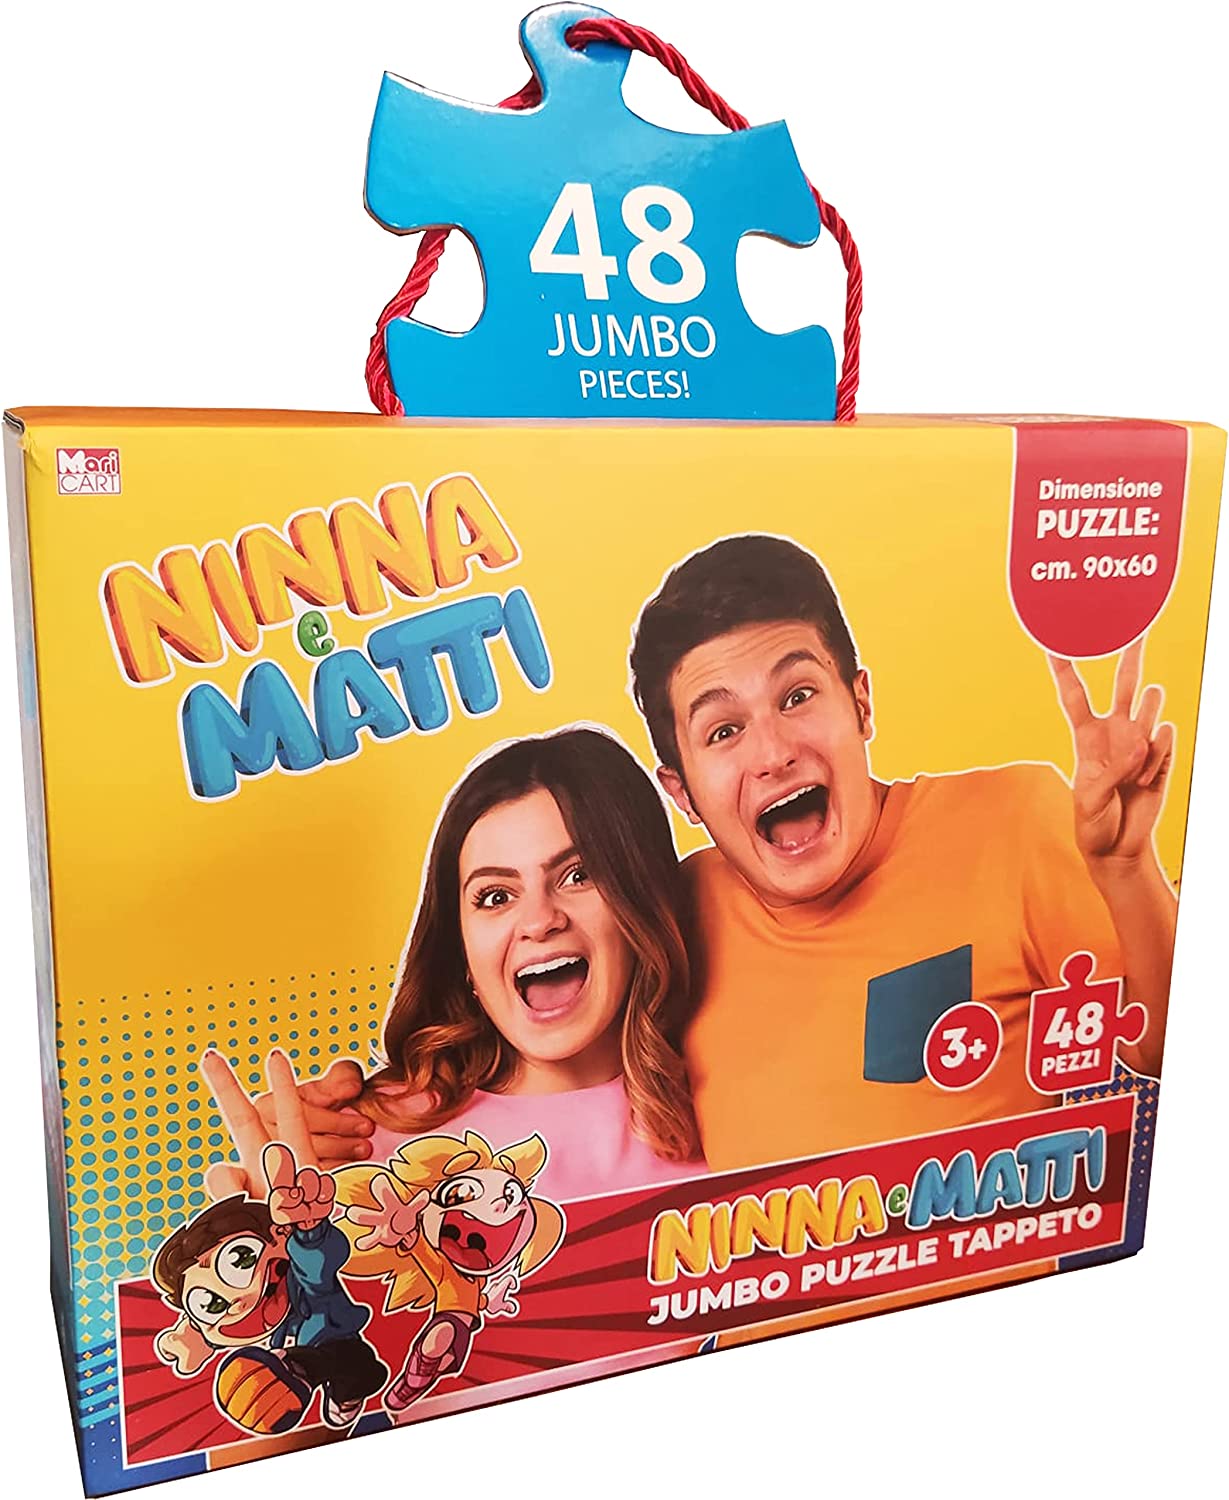 Ninna e Matti Tappeto Puzzle Jumbo, Tema Foto, Colore Giallo